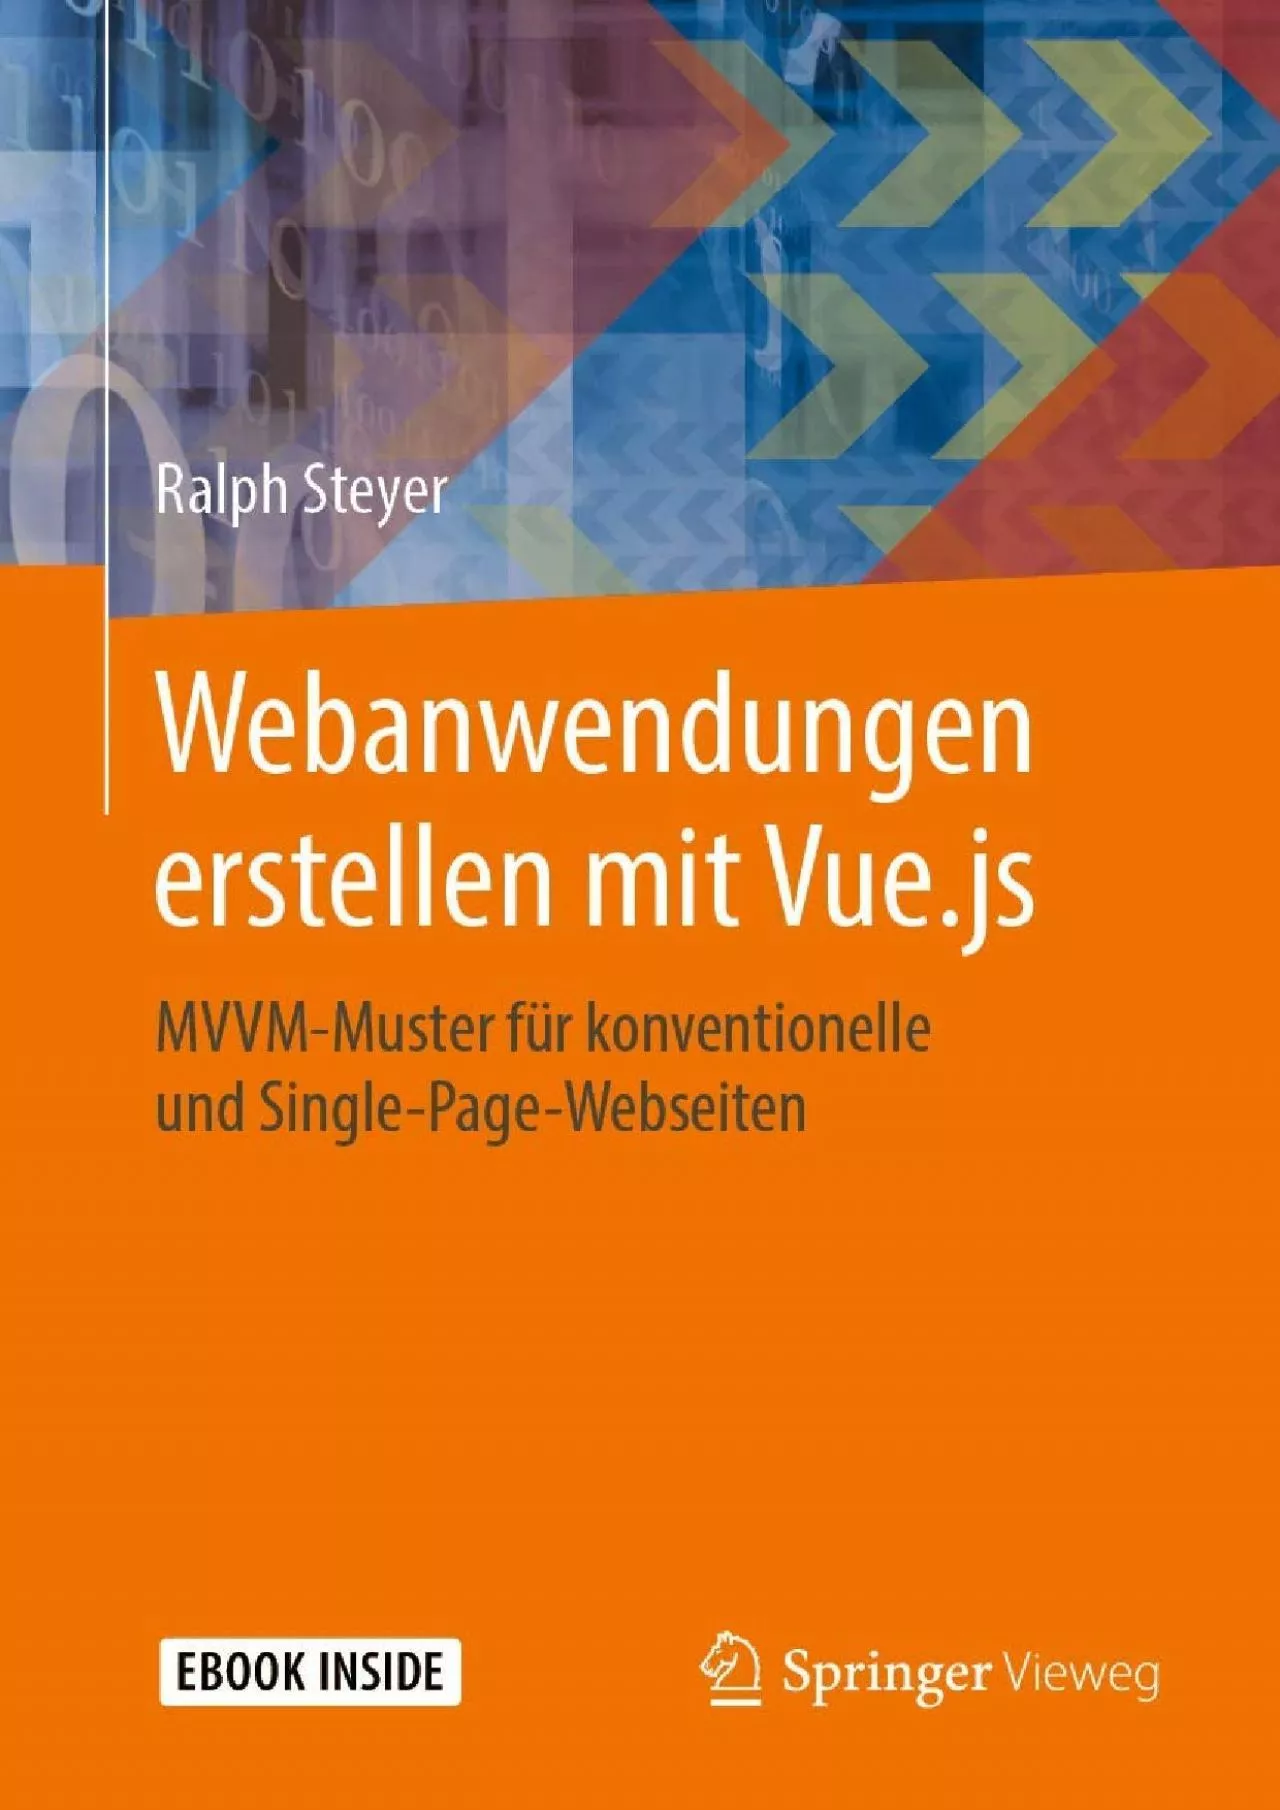 [eBOOK]-Webanwendungen erstellen mit Vue.js: MVVM-Muster für konventionelle und Single-Page-Webseiten